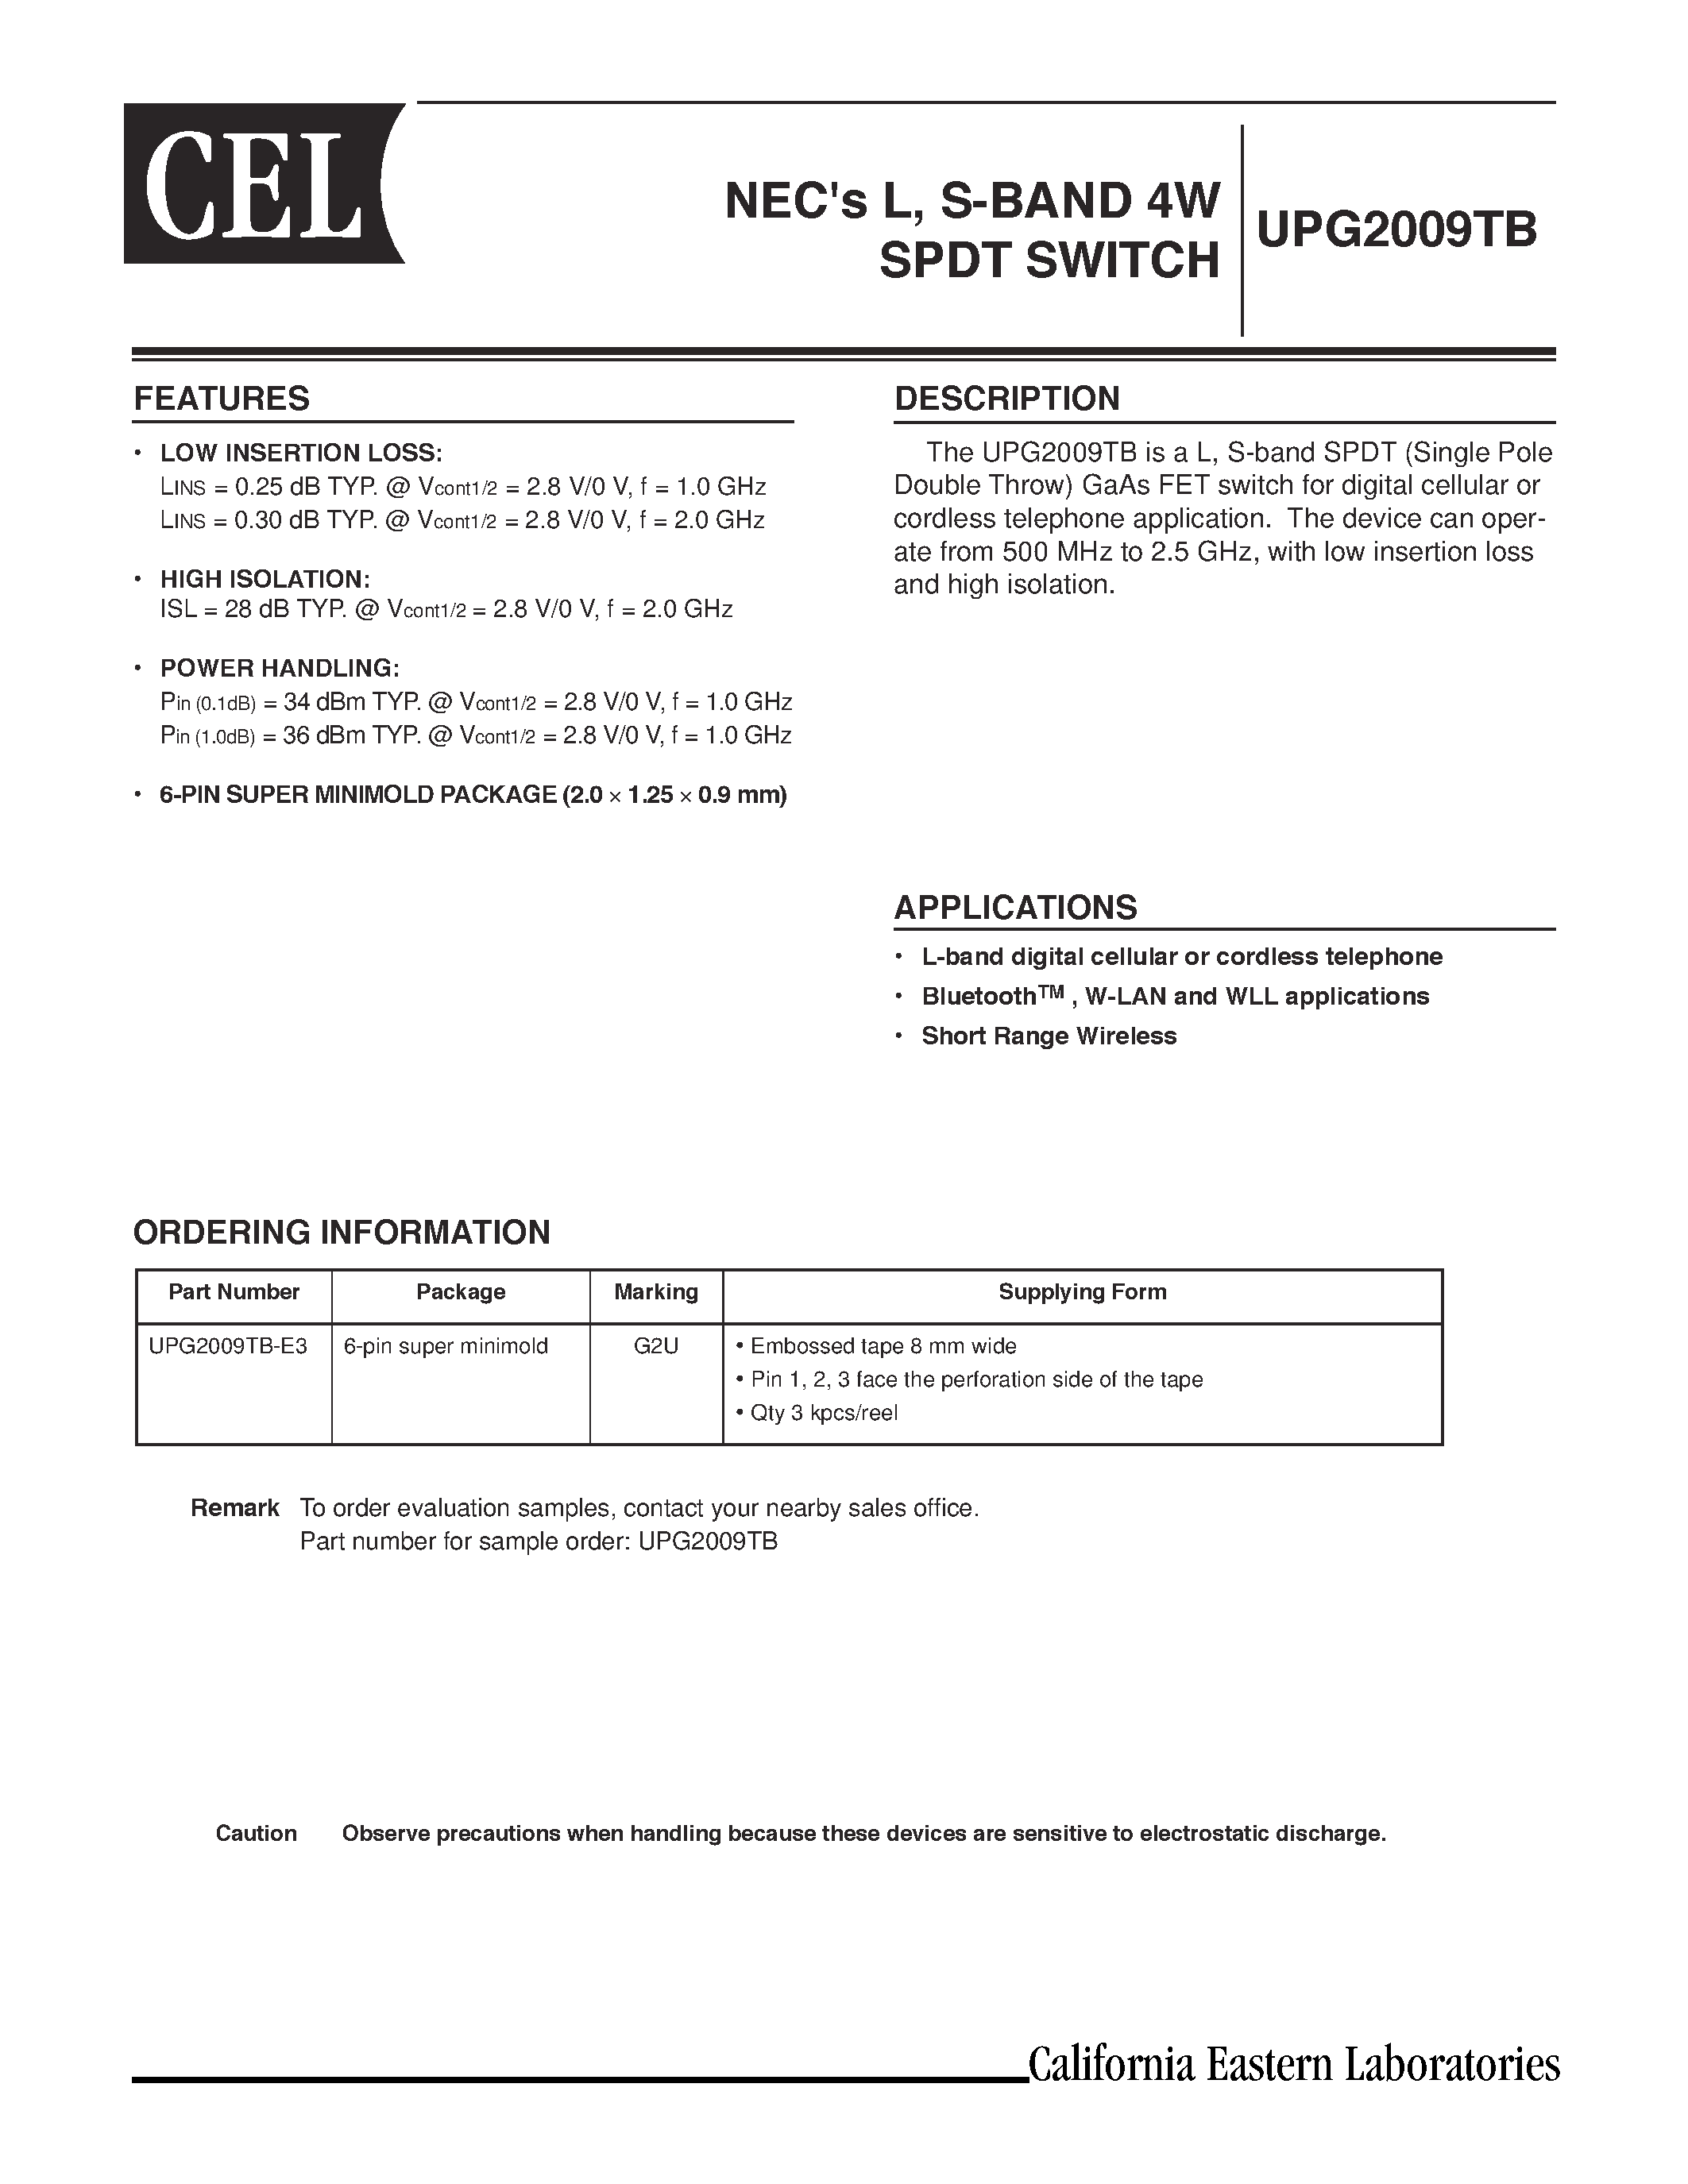 Даташит UPG2009TB - NECs L/ S-BAND 4W SPDT SWITCH страница 1